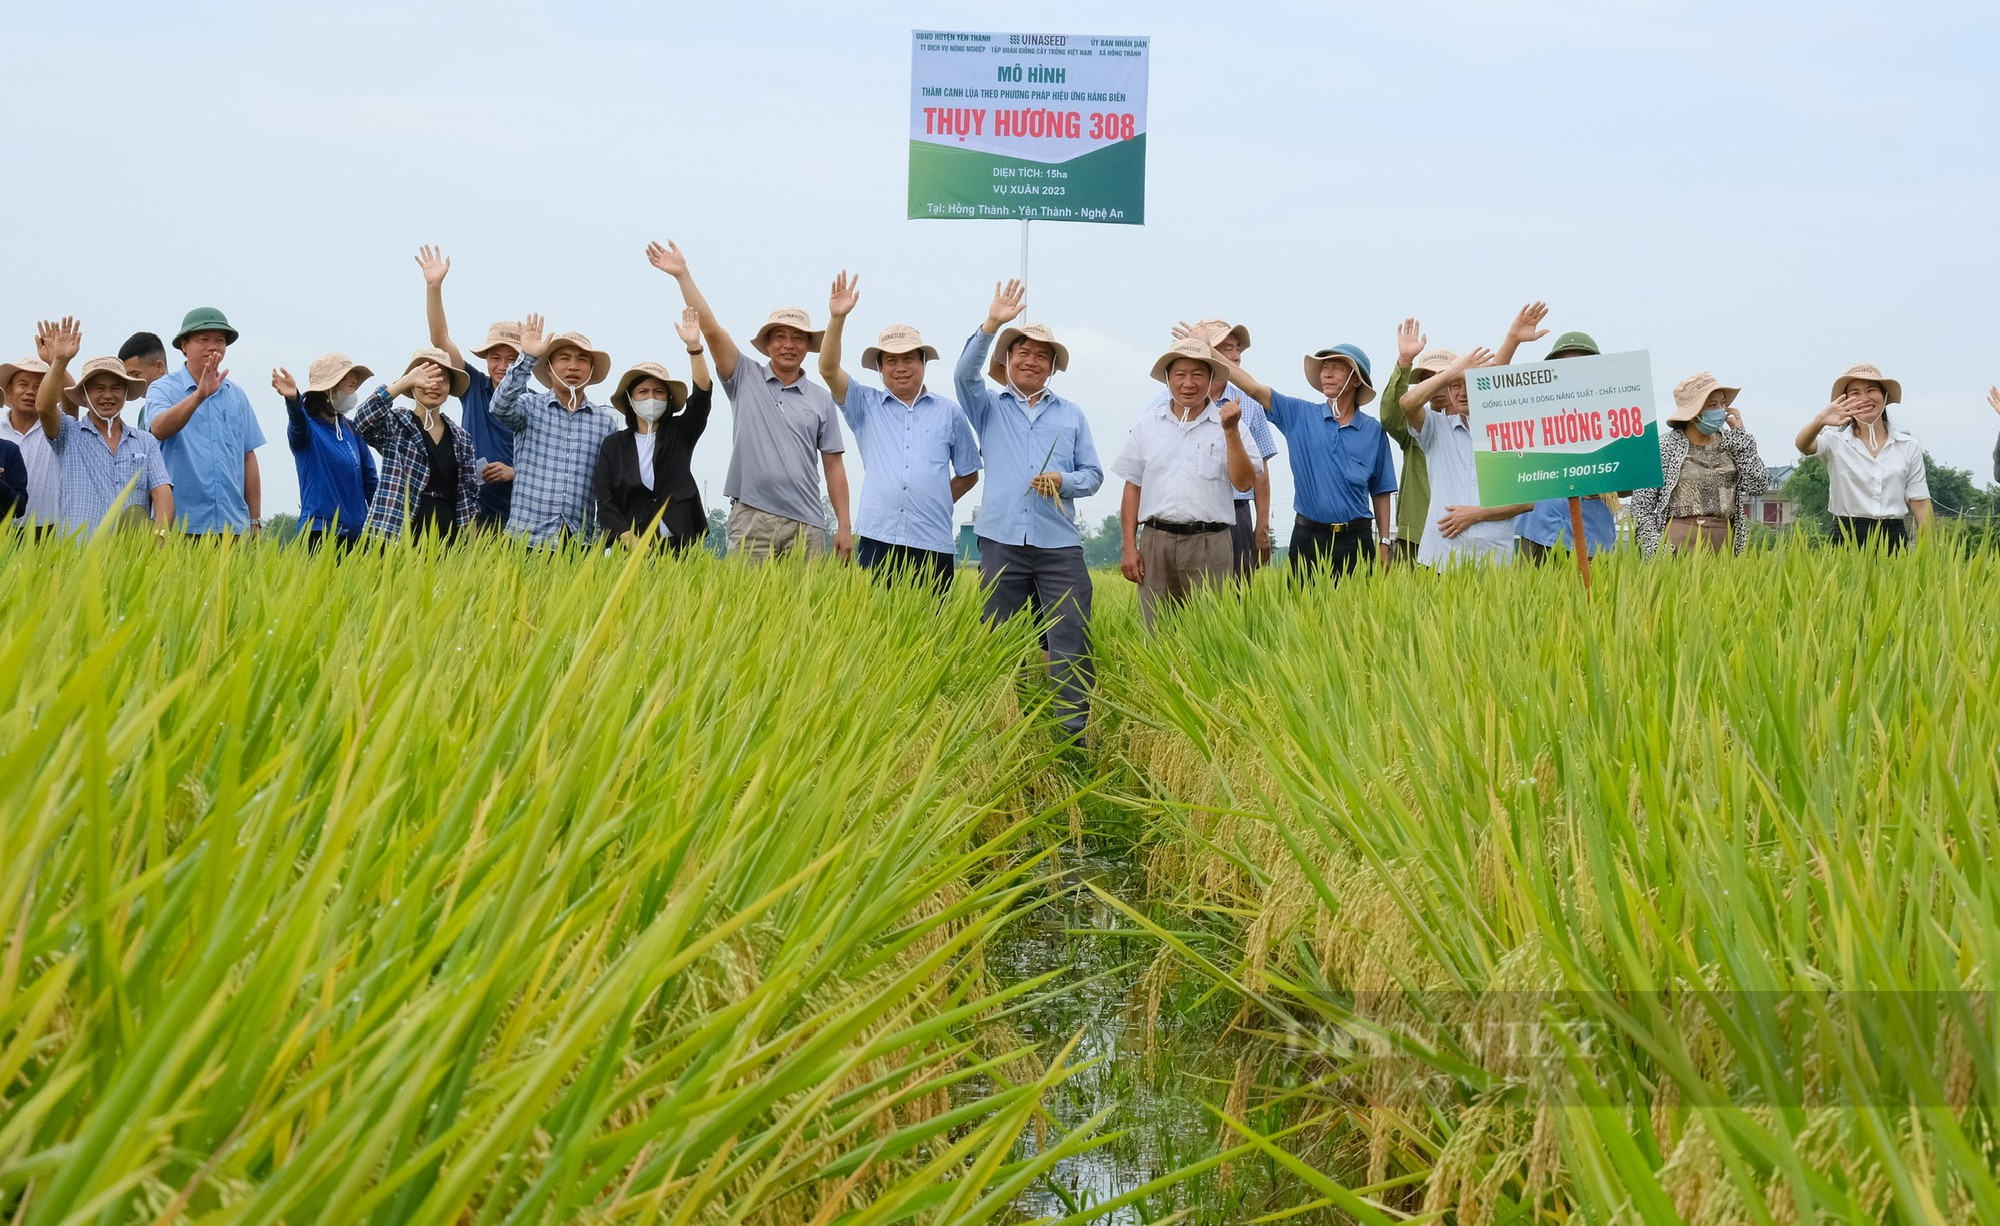 Thụy Hương 308 của Vinaseed khiến nông dân ở huyện Yên Thành, tỉnh Nghệ An bất ngờ khi đẻ khỏe, bông dài, hạt chắc - Ảnh 9.